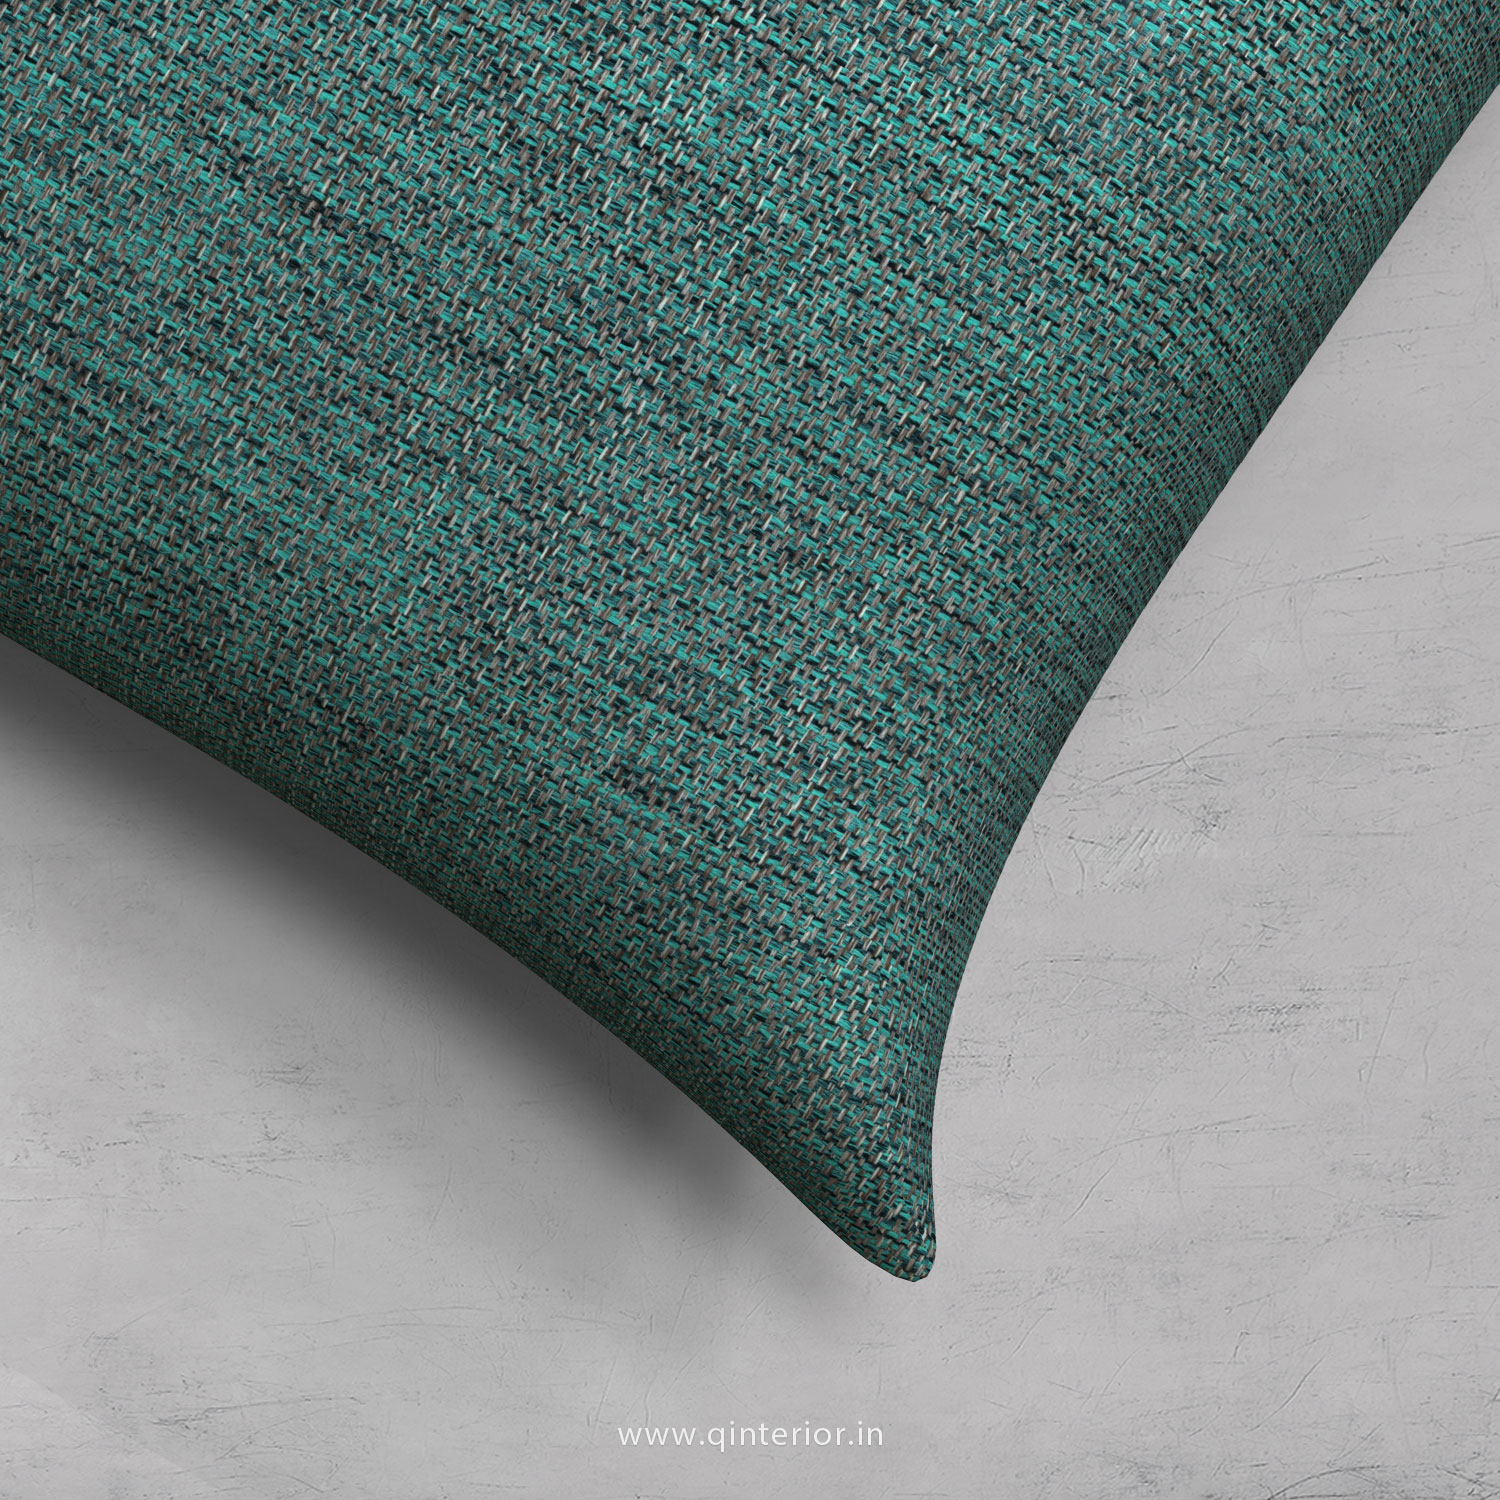 Cushion With Cushion Cover in Jacquard - CUS002 JQ23